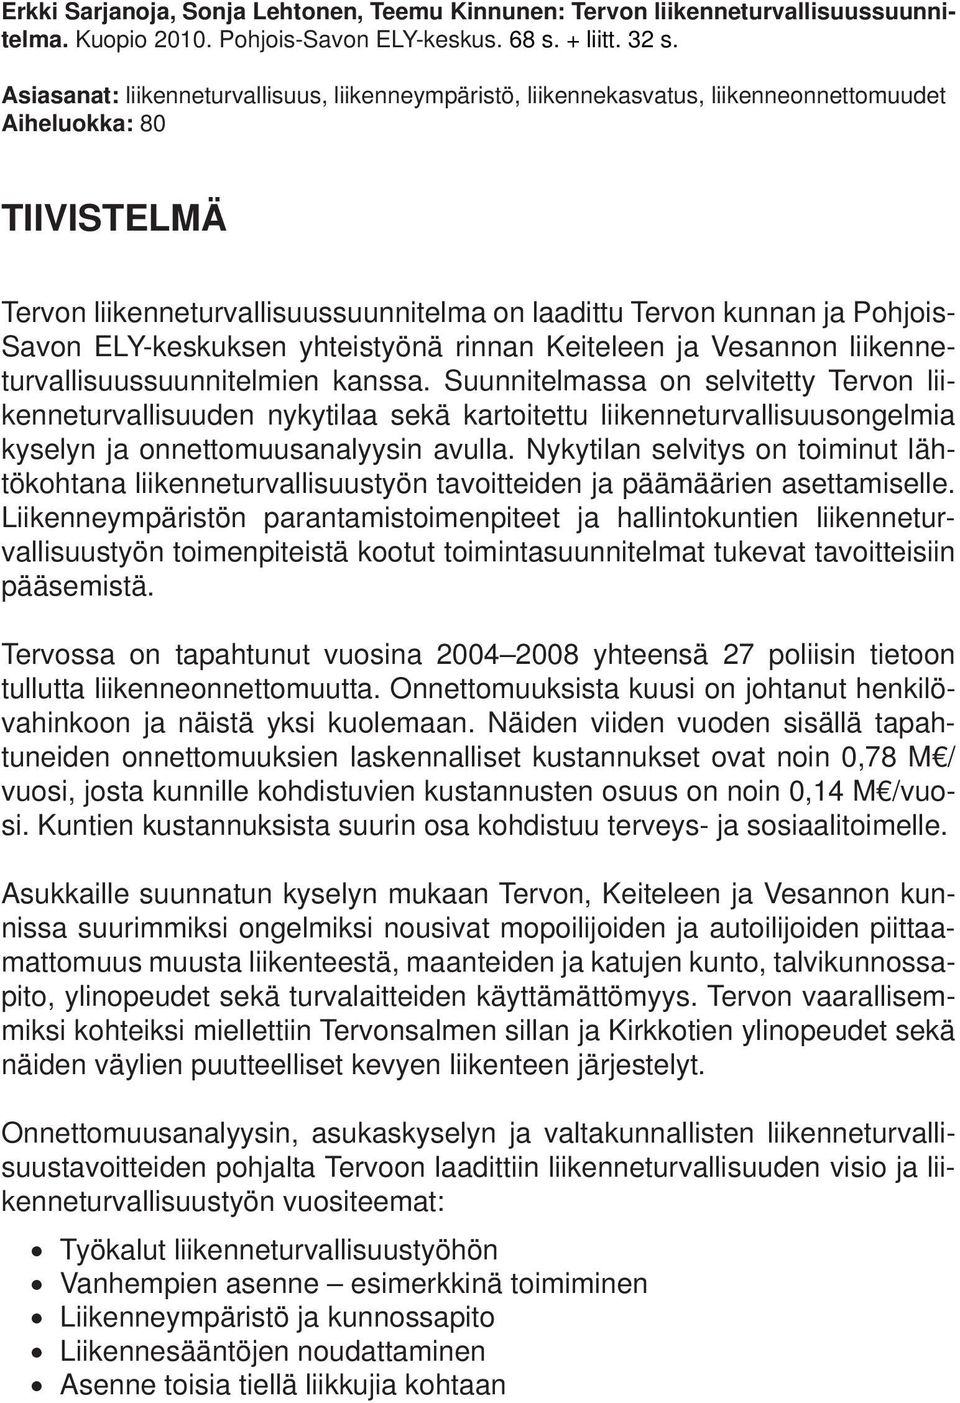 Savon ELY-keskuksen yhteistyönä rinnan Keiteleen ja Vesannon liikenneturvallisuussuunnitelmien kanssa.